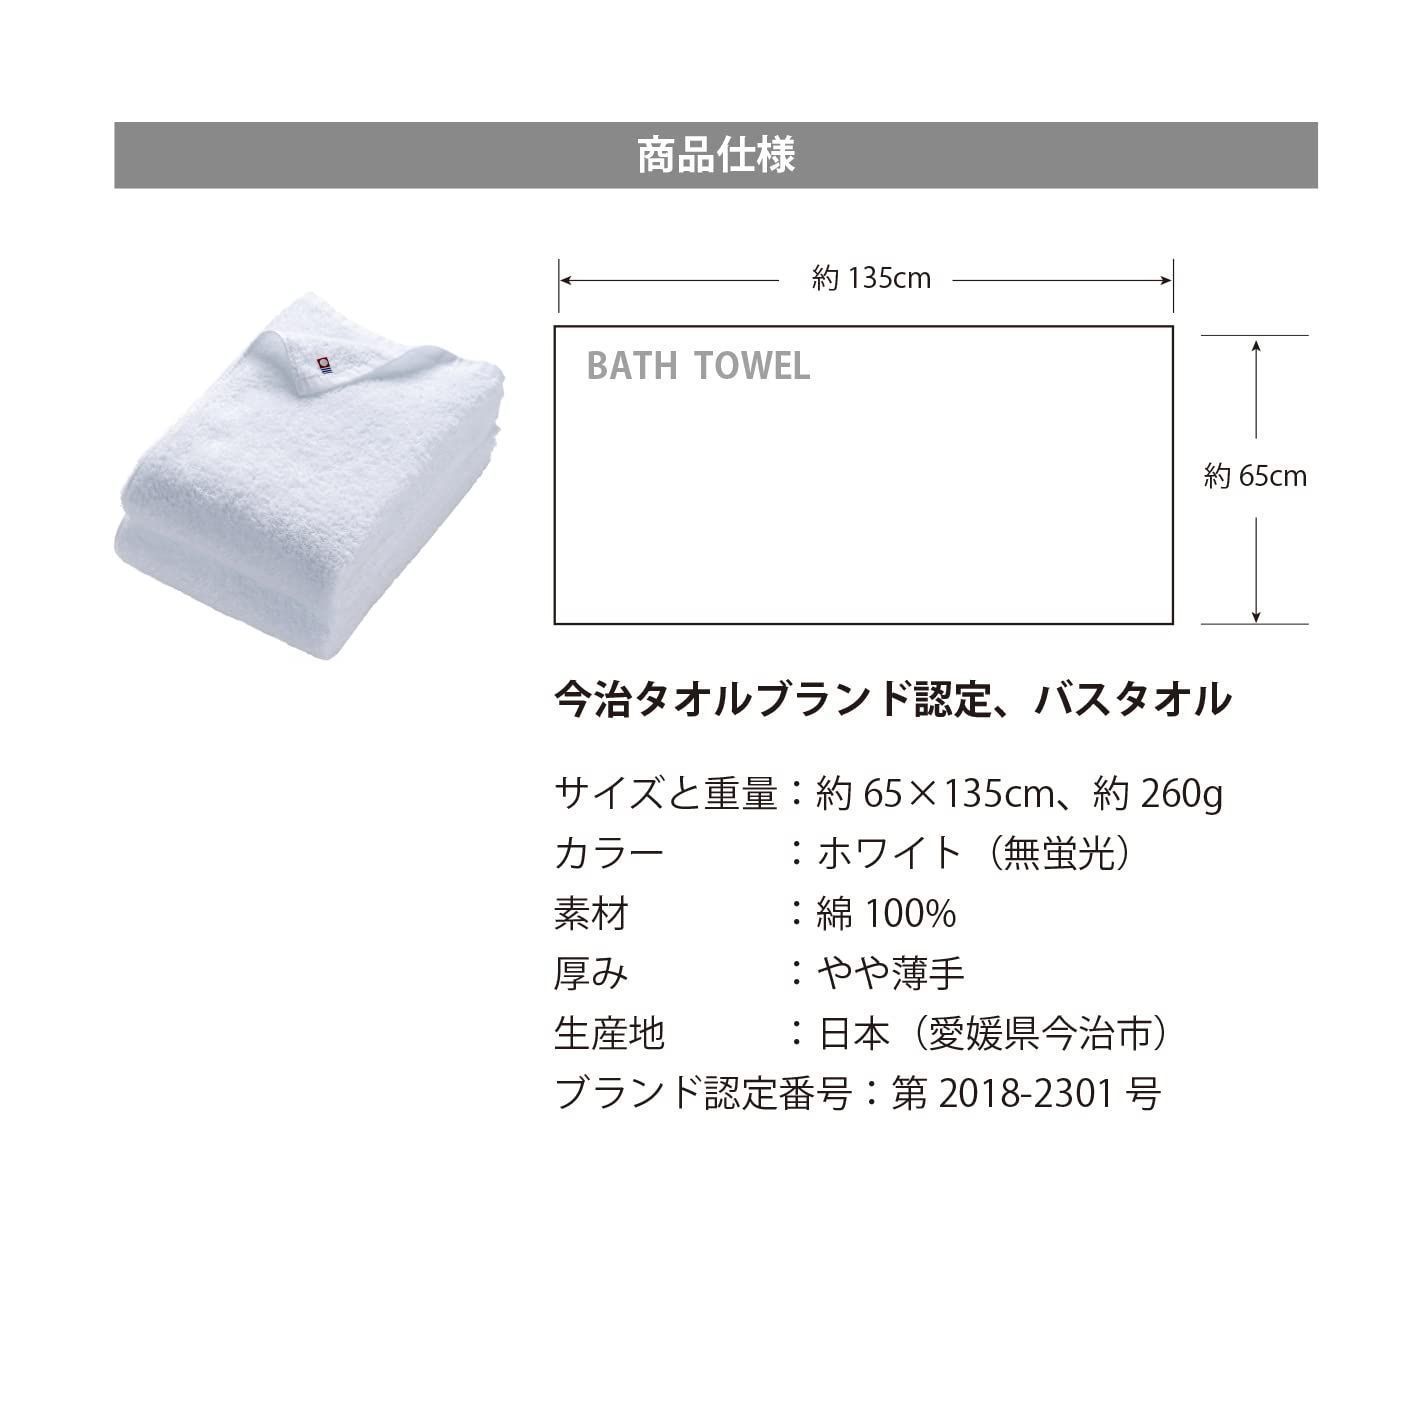 【新着商品】バスタオル ホワイト2枚 今治タオルブランド認定 OSKシリーズ 吸